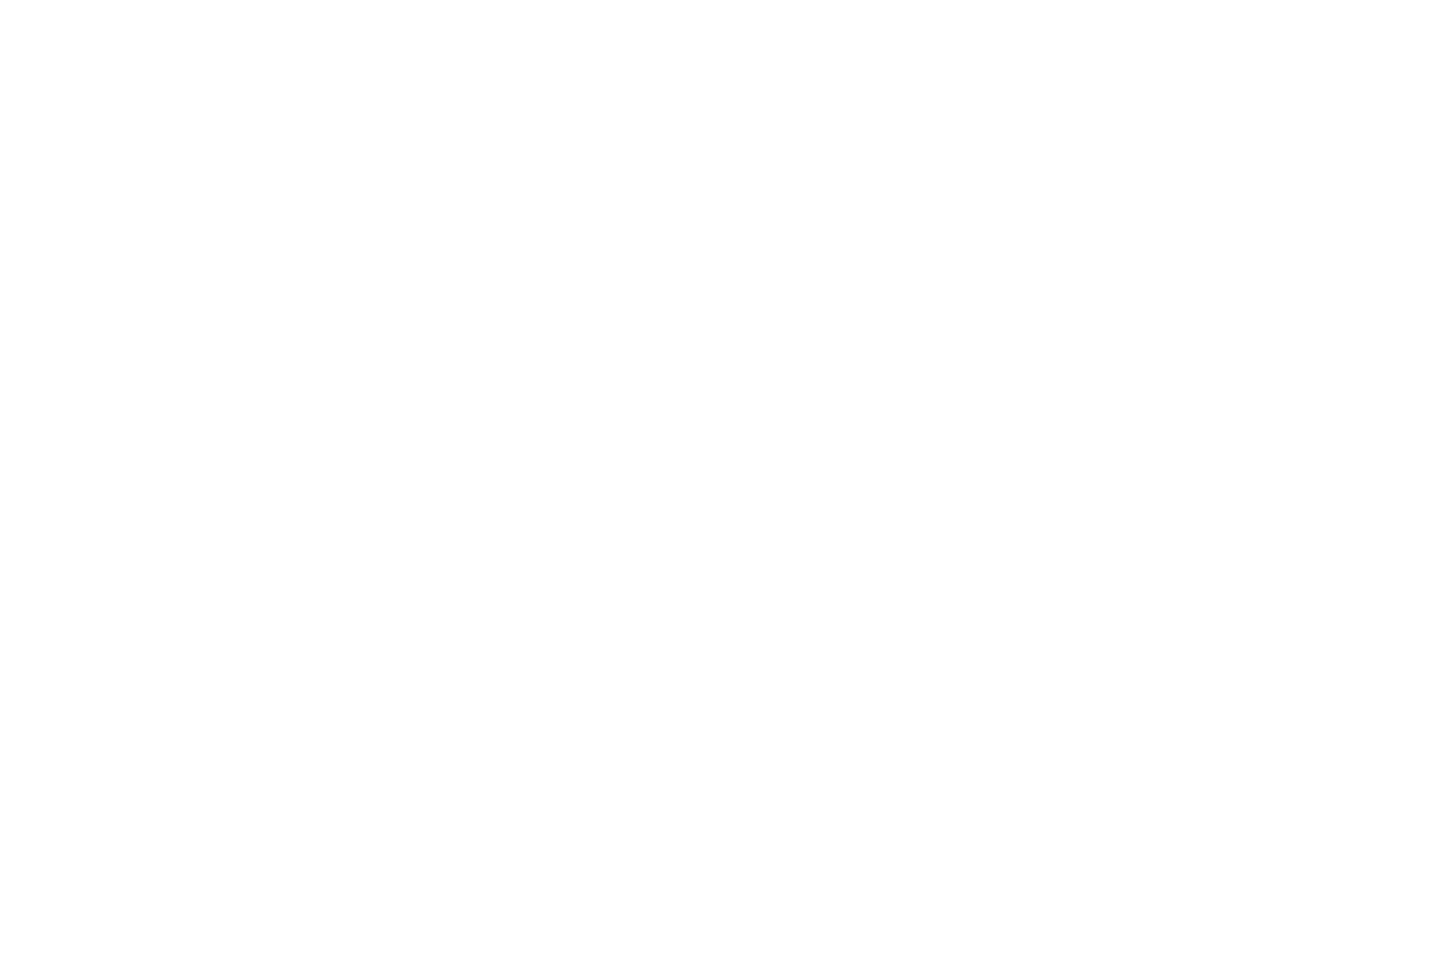 E celebracion di 10 aniversario di Aruba su hotel di luho tabata centra riba e hotel su recurso di mas importante den...